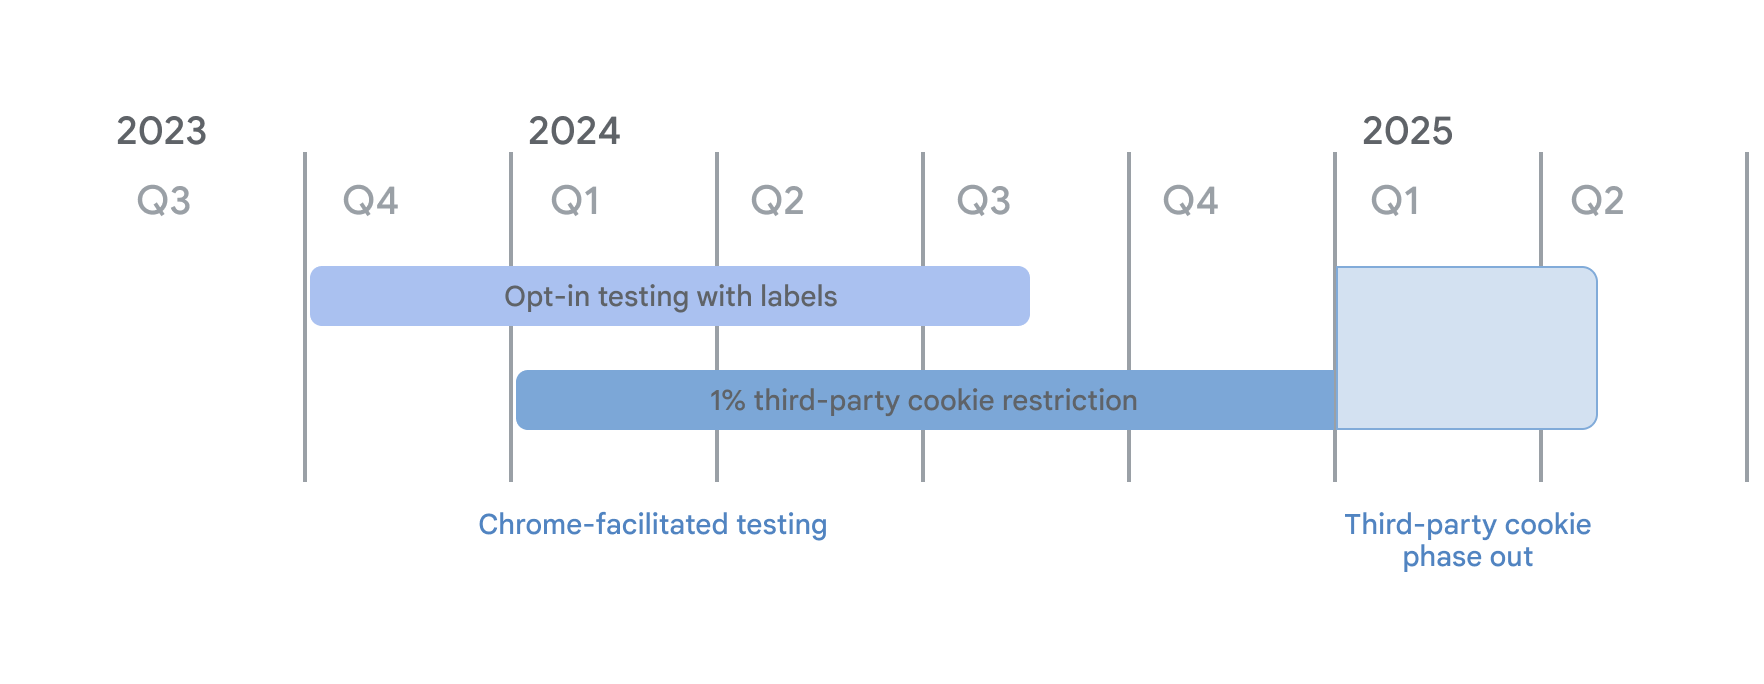 サードパーティ Cookie の廃止のスケジュールChrome によるテストの一環として、ラベルモードでのオプトイン テストが 2023 年第 4 四半期に開始され、2024 年 1 月 4 日から 1% の 3PC 制限が適用されました。どちらも、サードパーティ Cookie の段階的廃止が開始される 2025 年第 1 四半期まで継続されます。